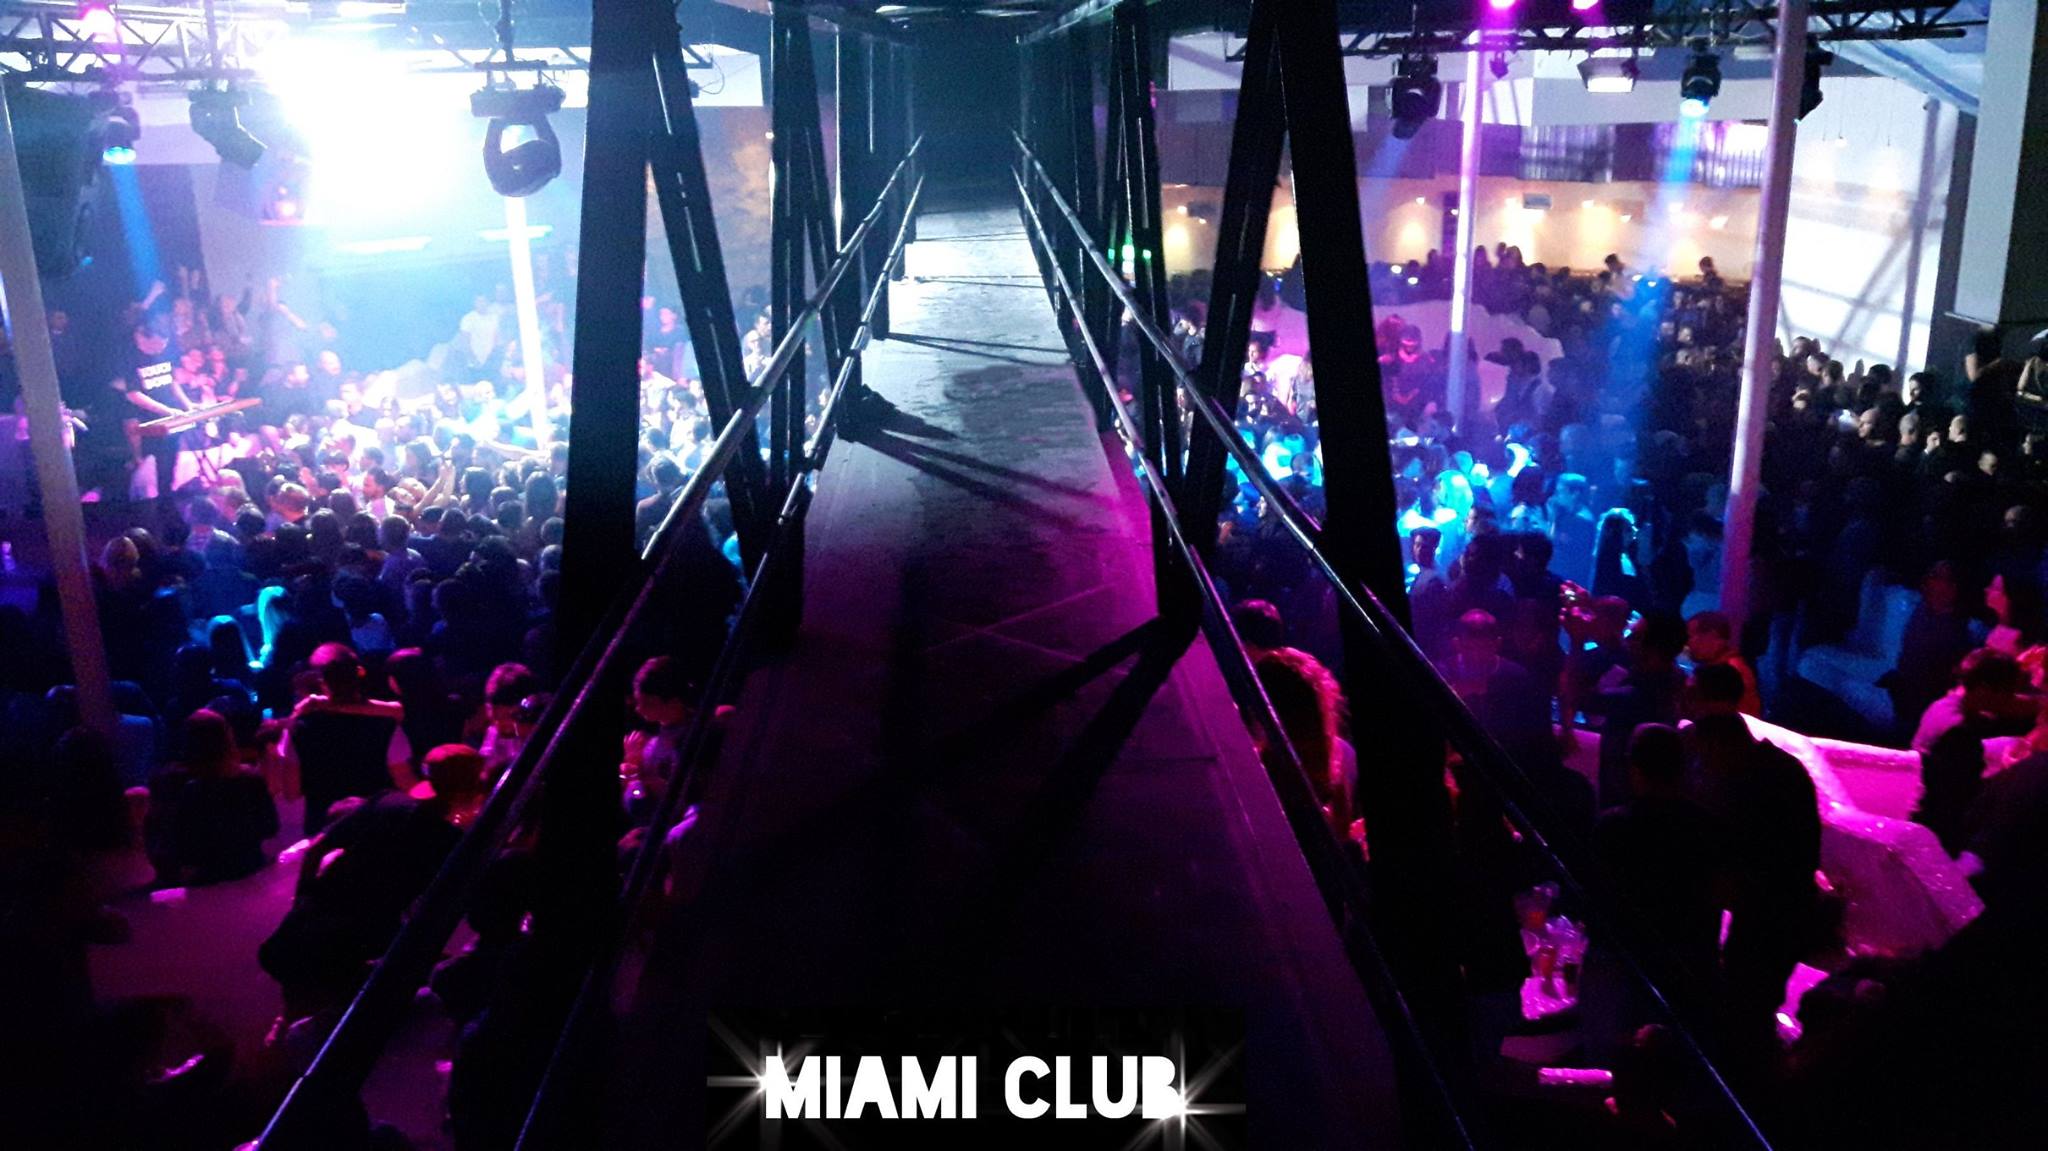 Miami Club, Technocratia con djs Cirillo, Saccoman e Tommi Menca